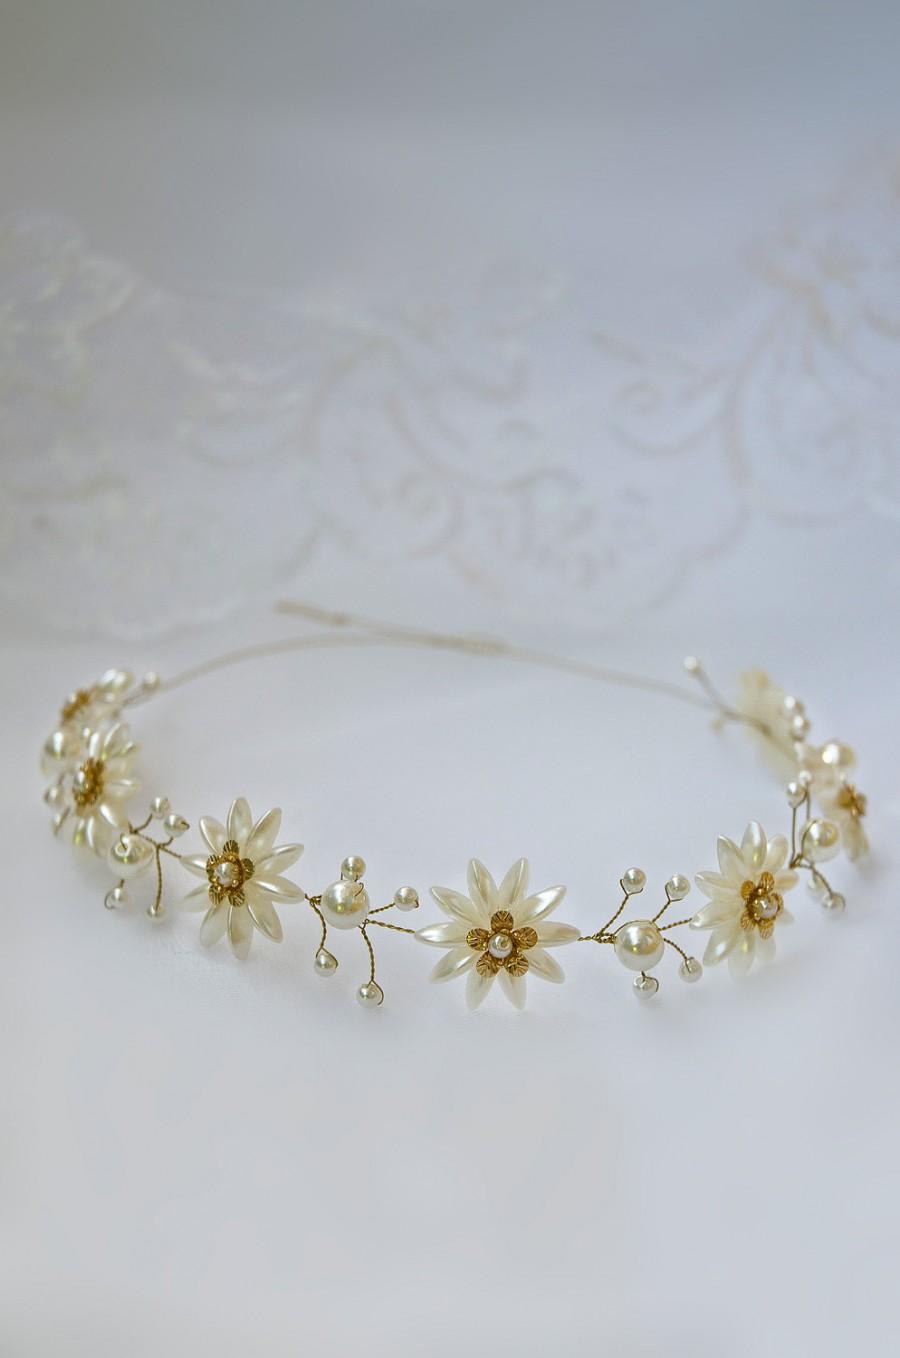 زفاف - daisy pearl flower crown, pearl hair piece, wedding headpiece, daisy chain vine, gold bridal tiara, tiara headband, bridal headpiece, daisy